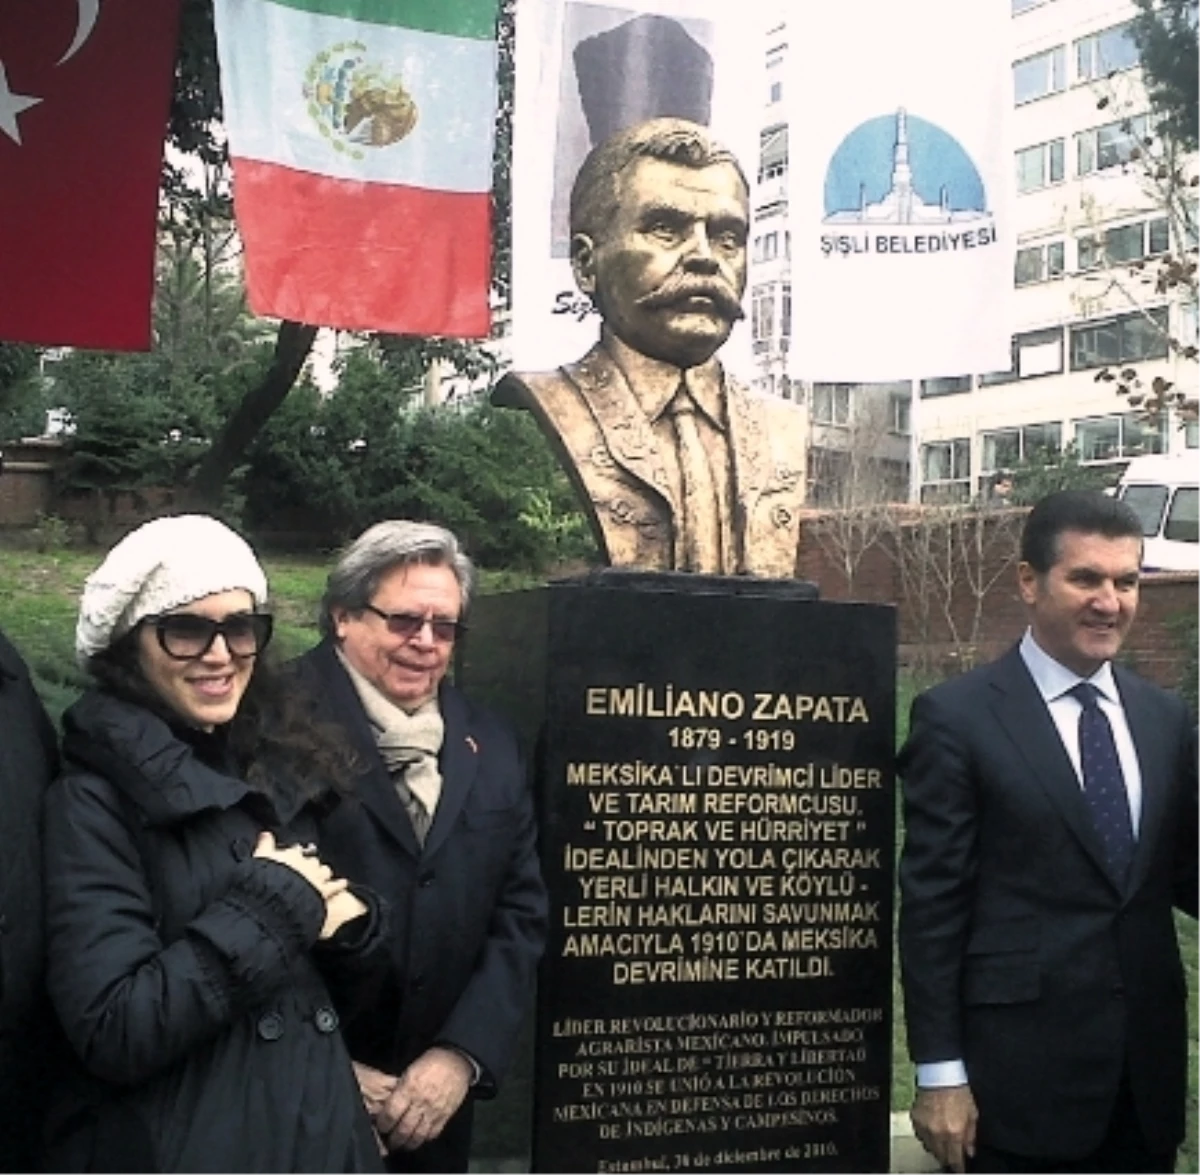 İzmir\'de, Meksika Devrimi Lideri Zapata\'nın Büstü Açıldı